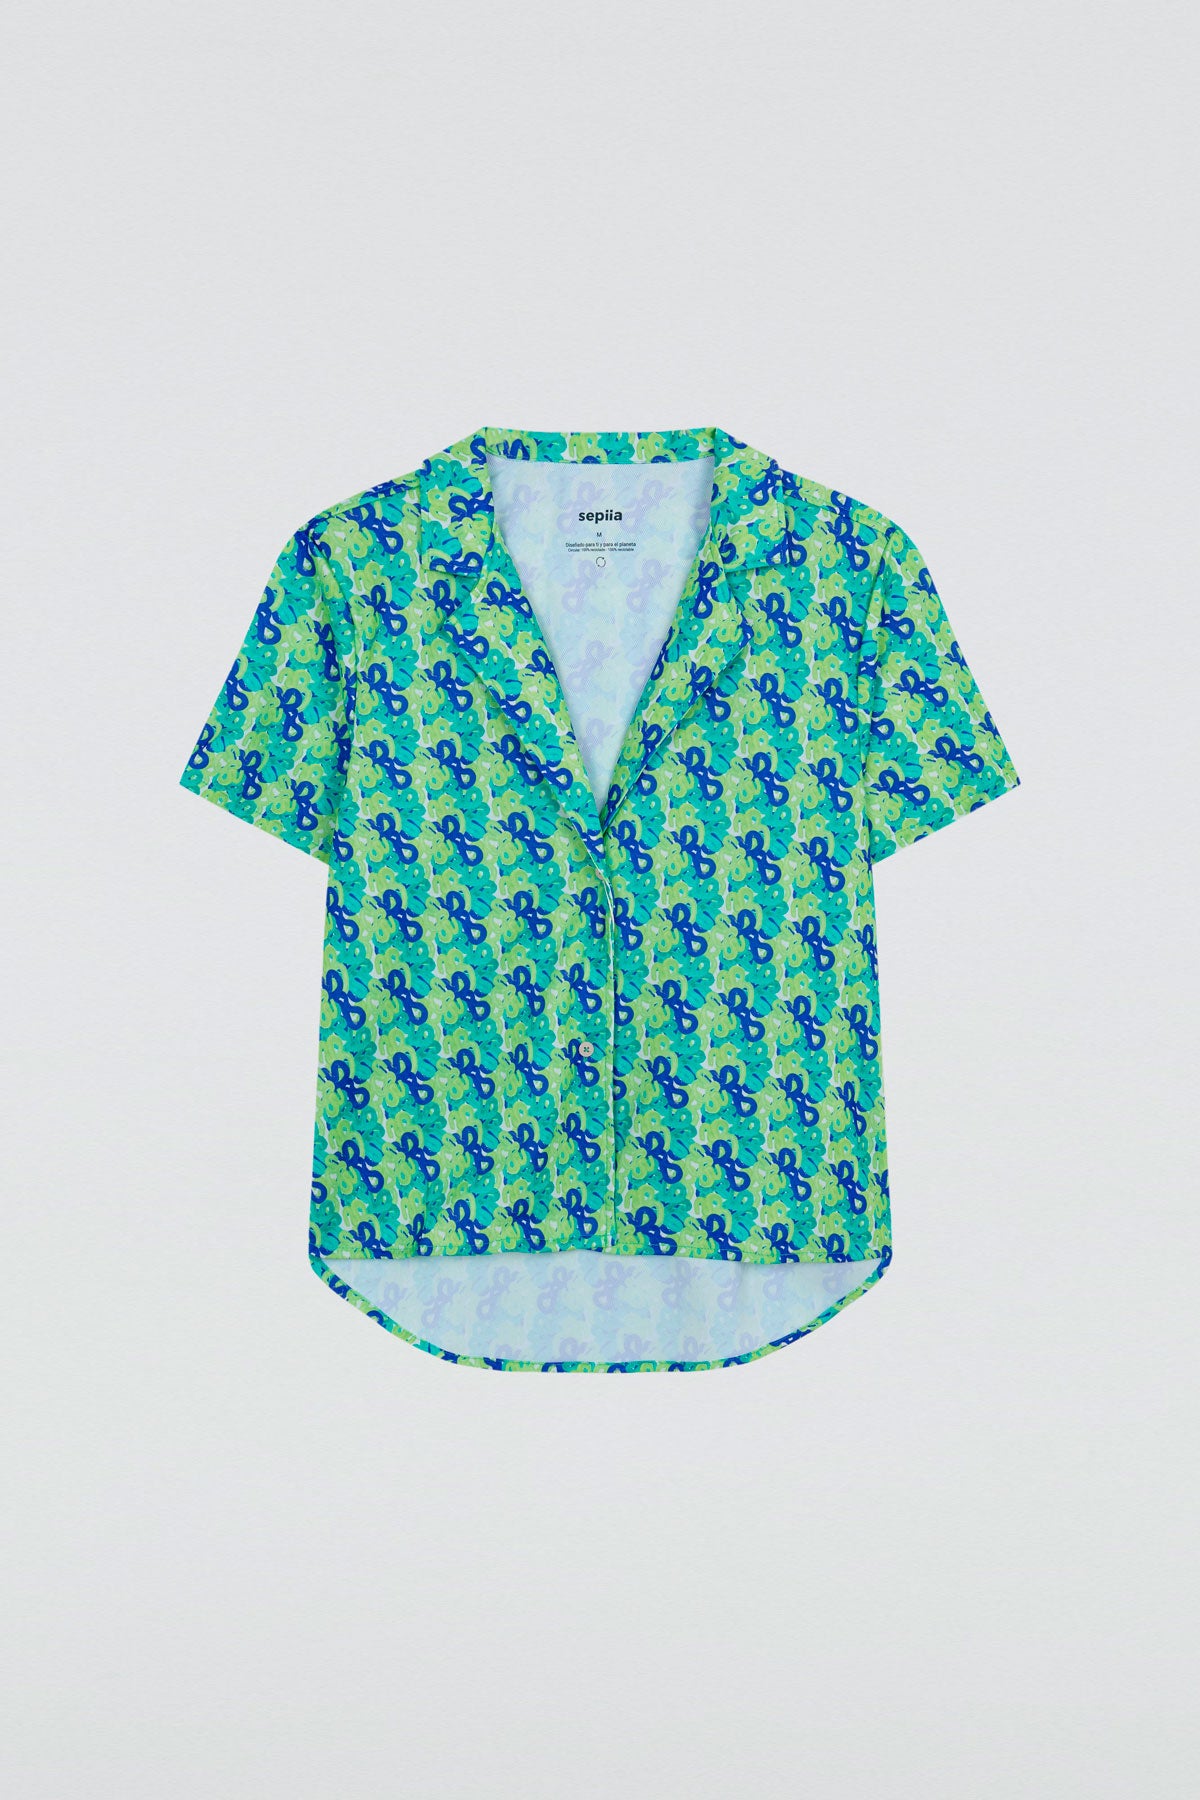 Camisa manga corta con estampado cascada de Sepiia, fresca y elegante, perfecta para el verano. Foto plano